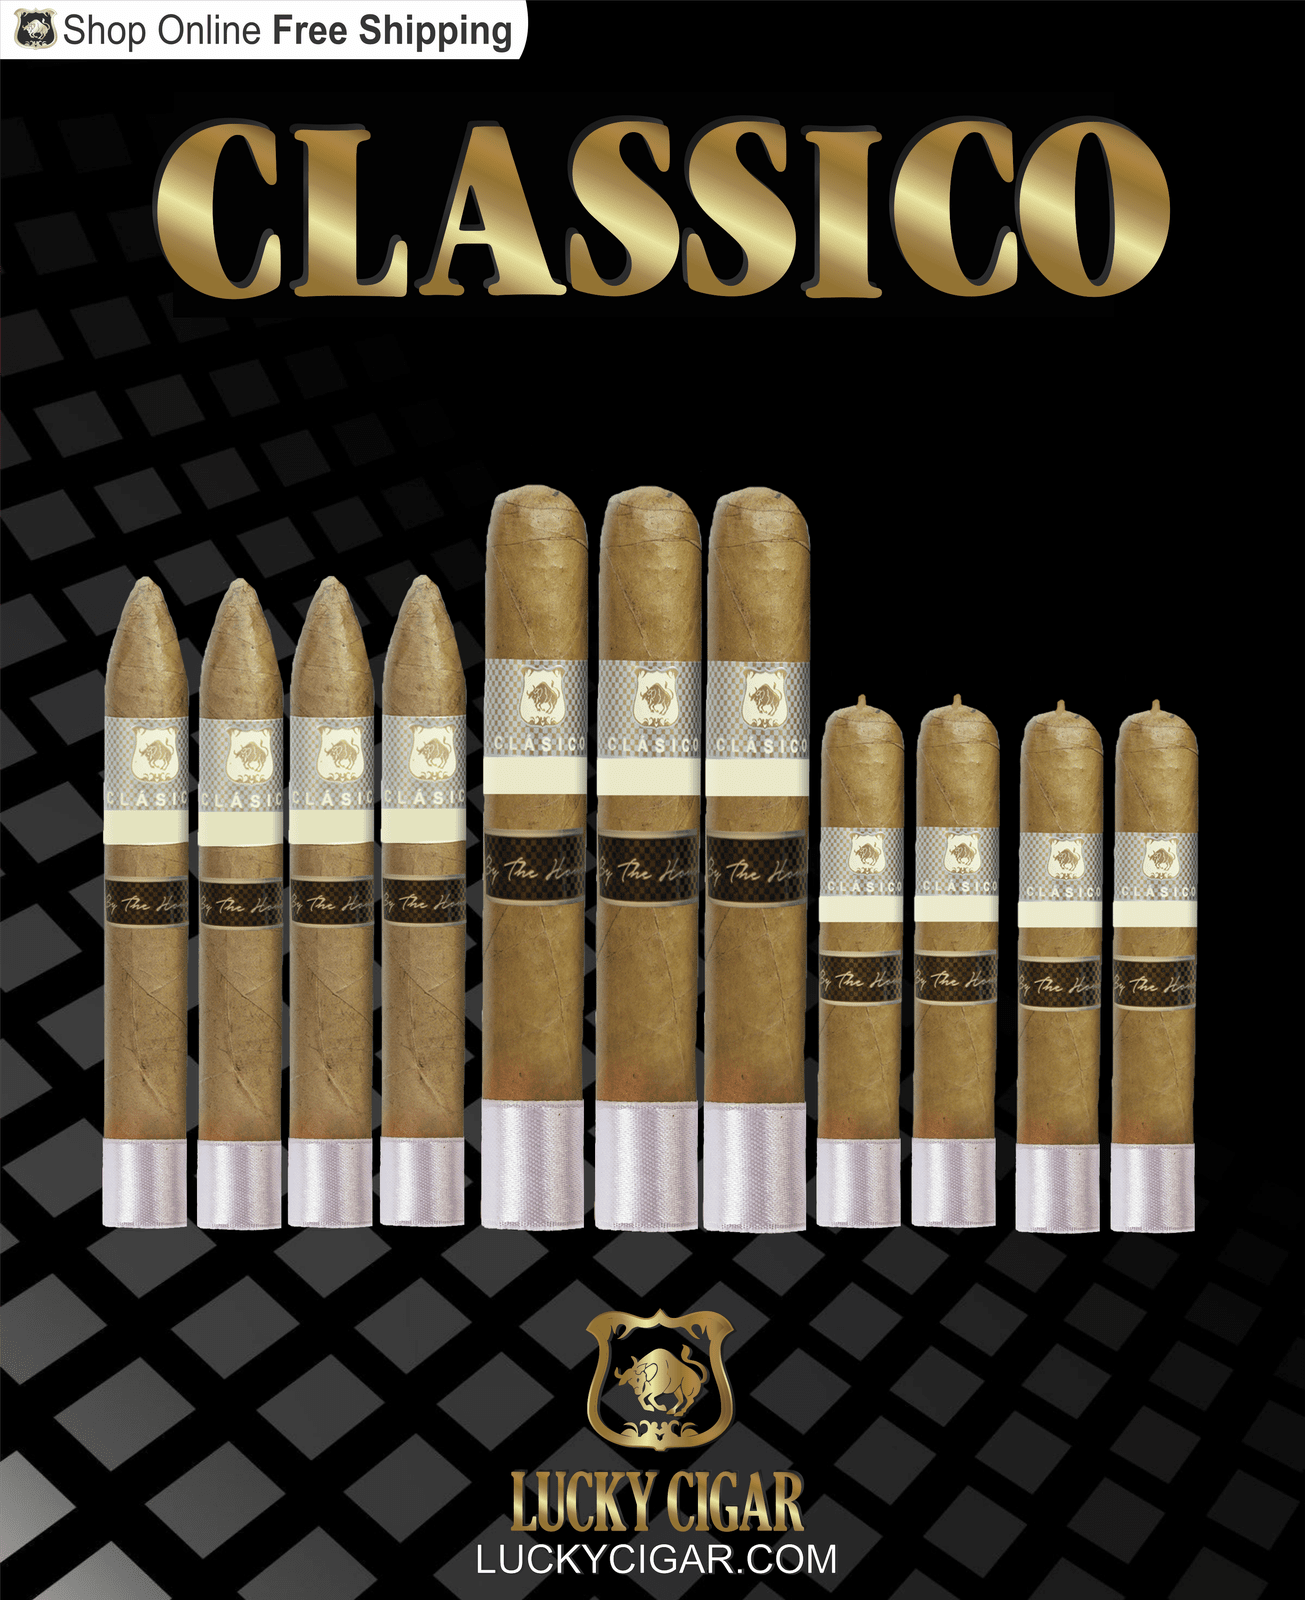 Lucky Cigar Sampler Sets: Set of 11 Classico Cigars, Torpedo, Robusto, Gordo